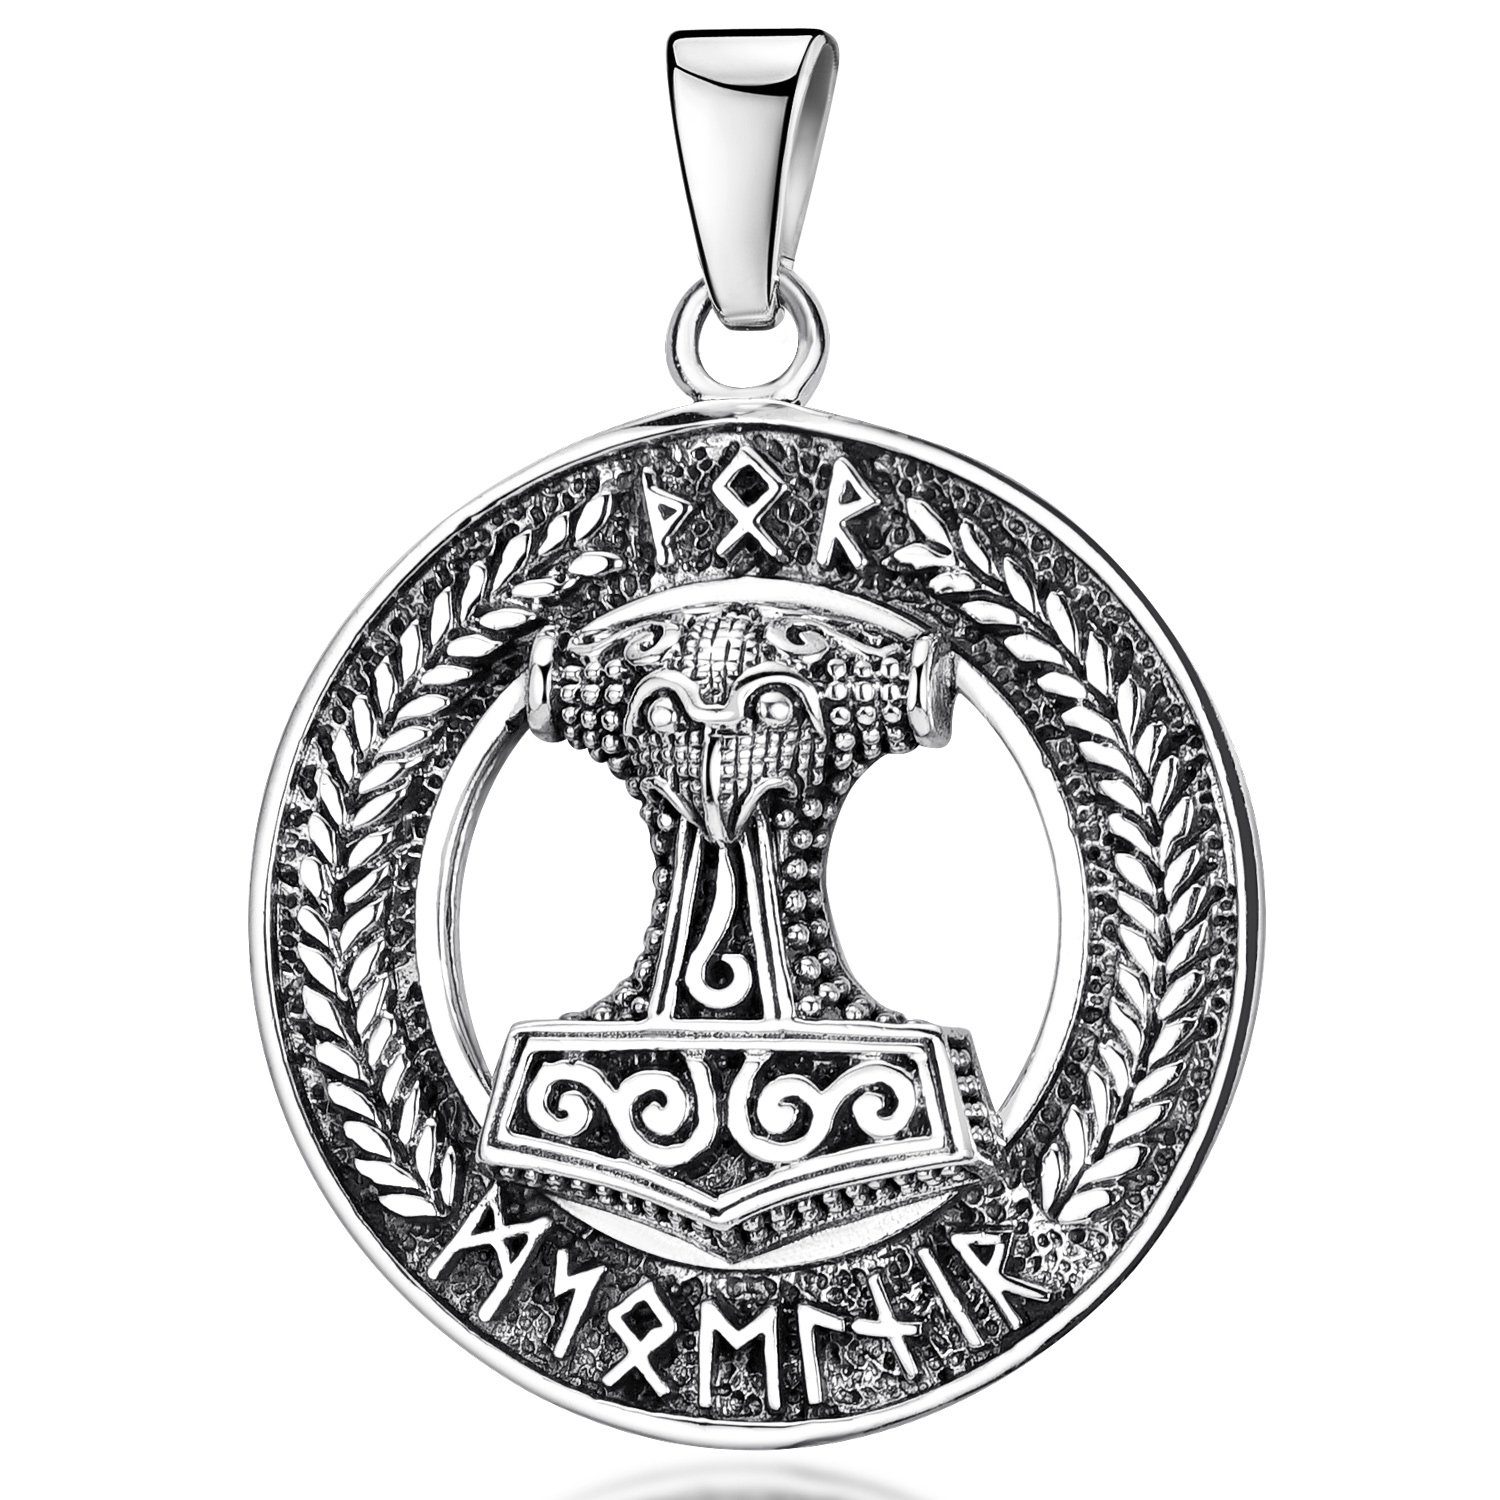 Materia Kettenanhänger Herren Thors Hammer Runen KA-135, 925 Sterling Silber, geschwärzt